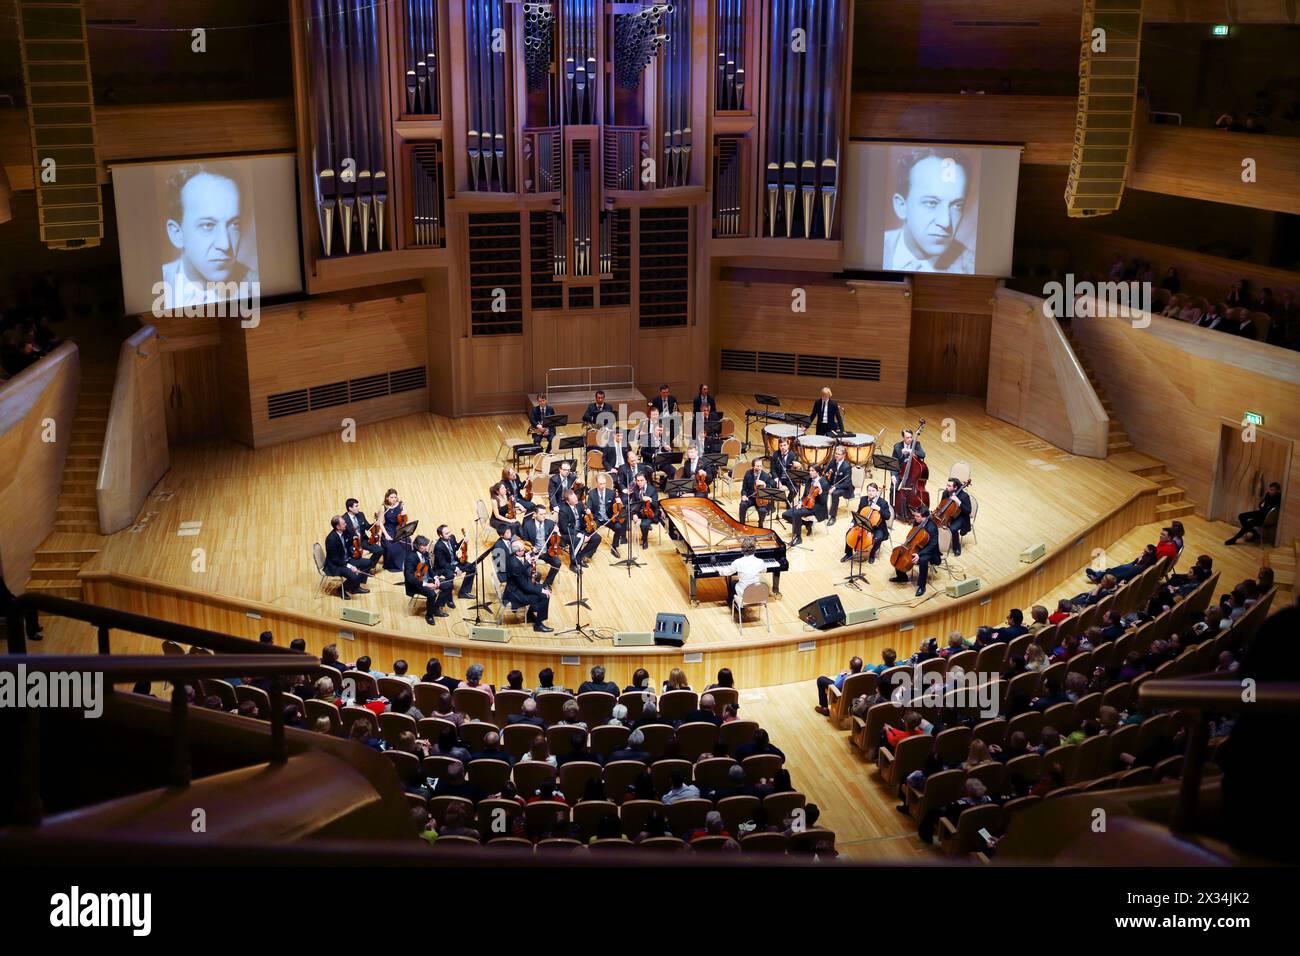 MOSKAU - 20. April 2015: Orchester tritt bei einem Konzert zum 100. Jahrestag von David Aschkenazy im Haus der Musik im Saal Svetlanov auf Stockfoto